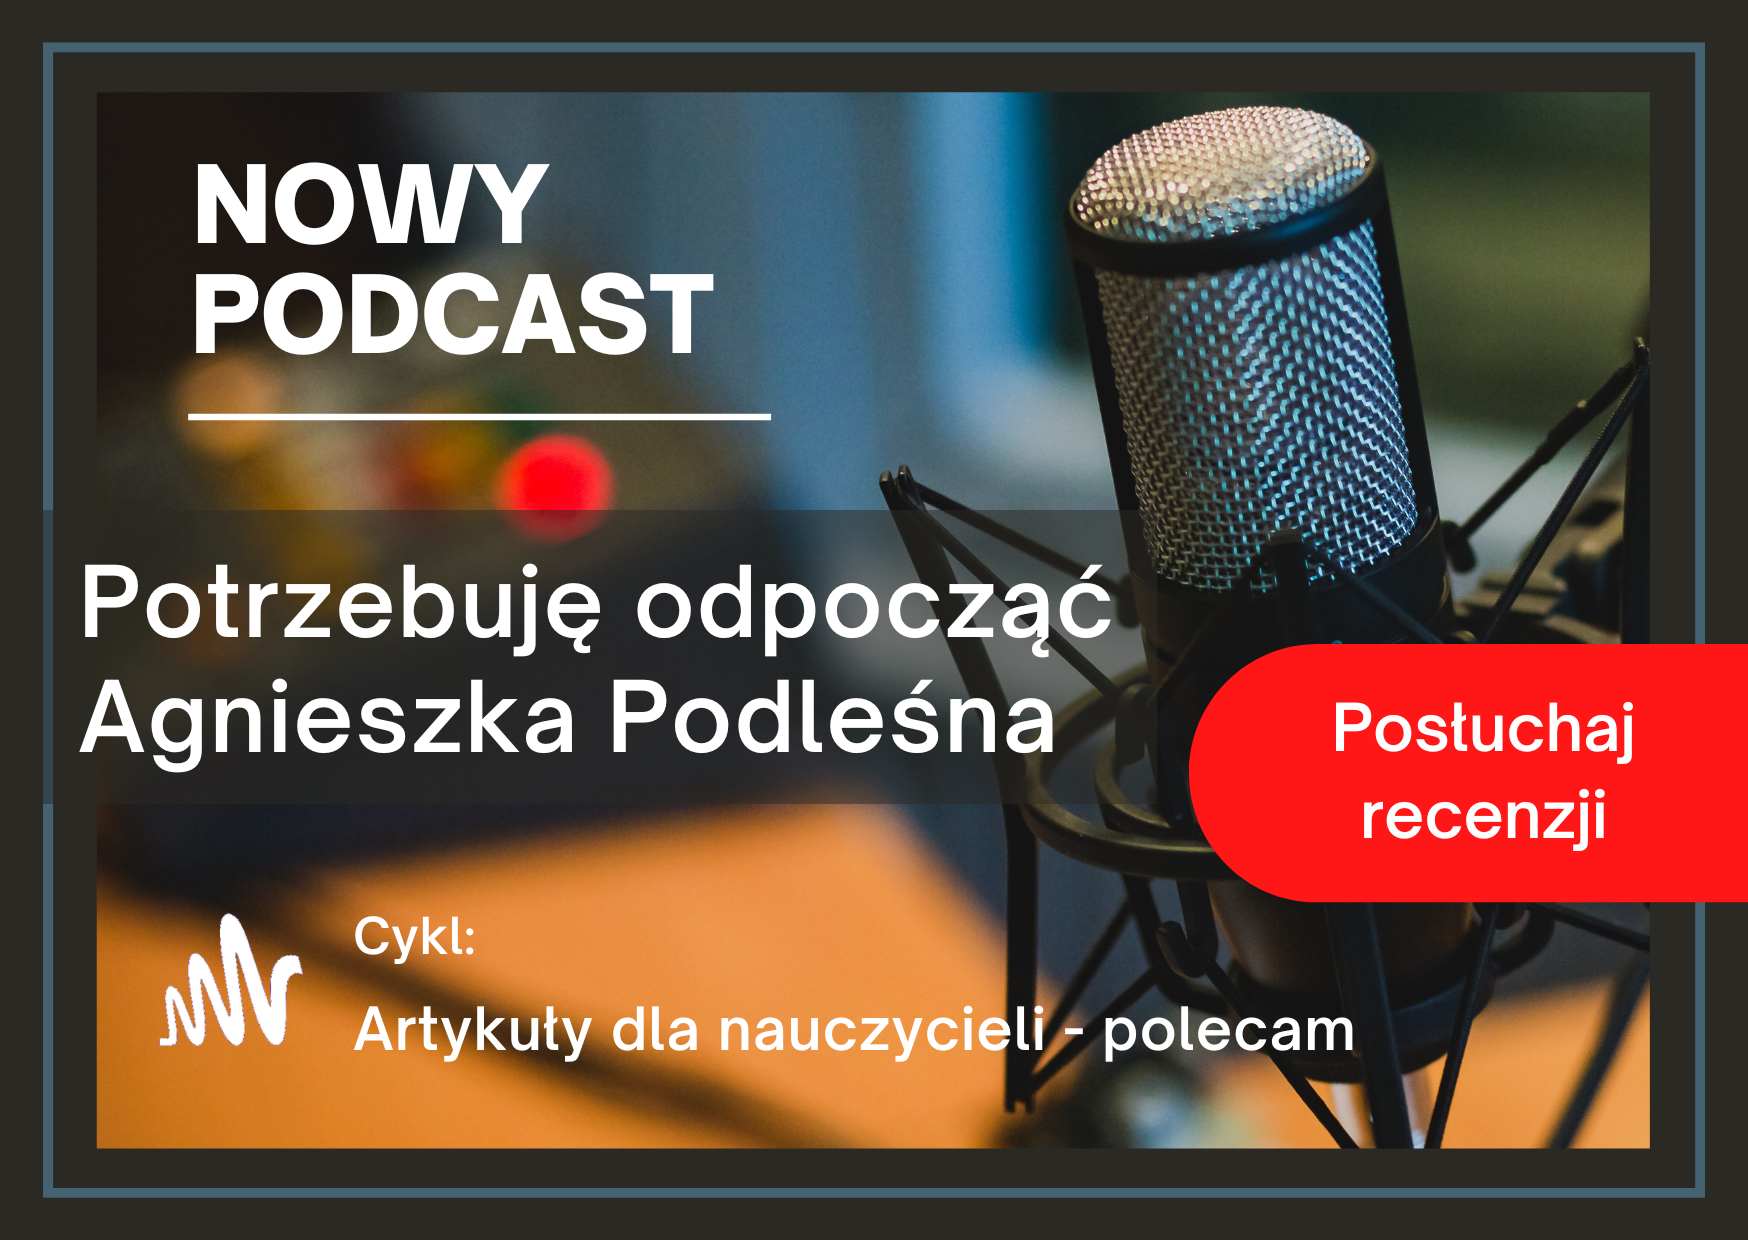 Podcast z recenzją artykułu: Potrzebuję odpocząć, Agnieszka Podleśna.